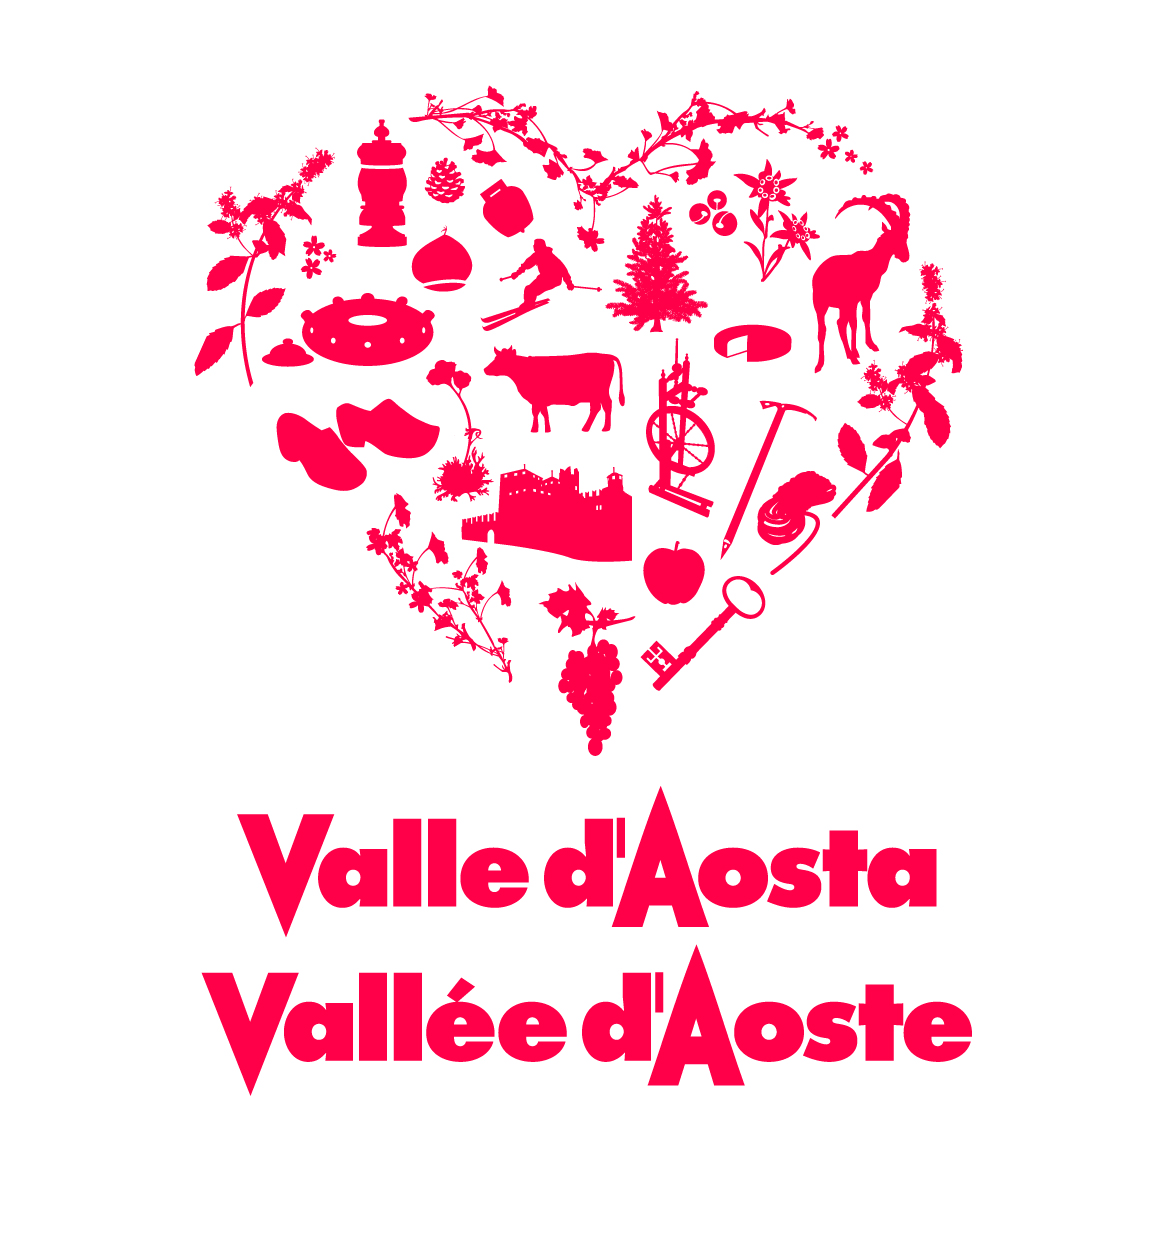 Office régional du tourisme de la Vallée d'Aoste : Brand Short Description Type Here.